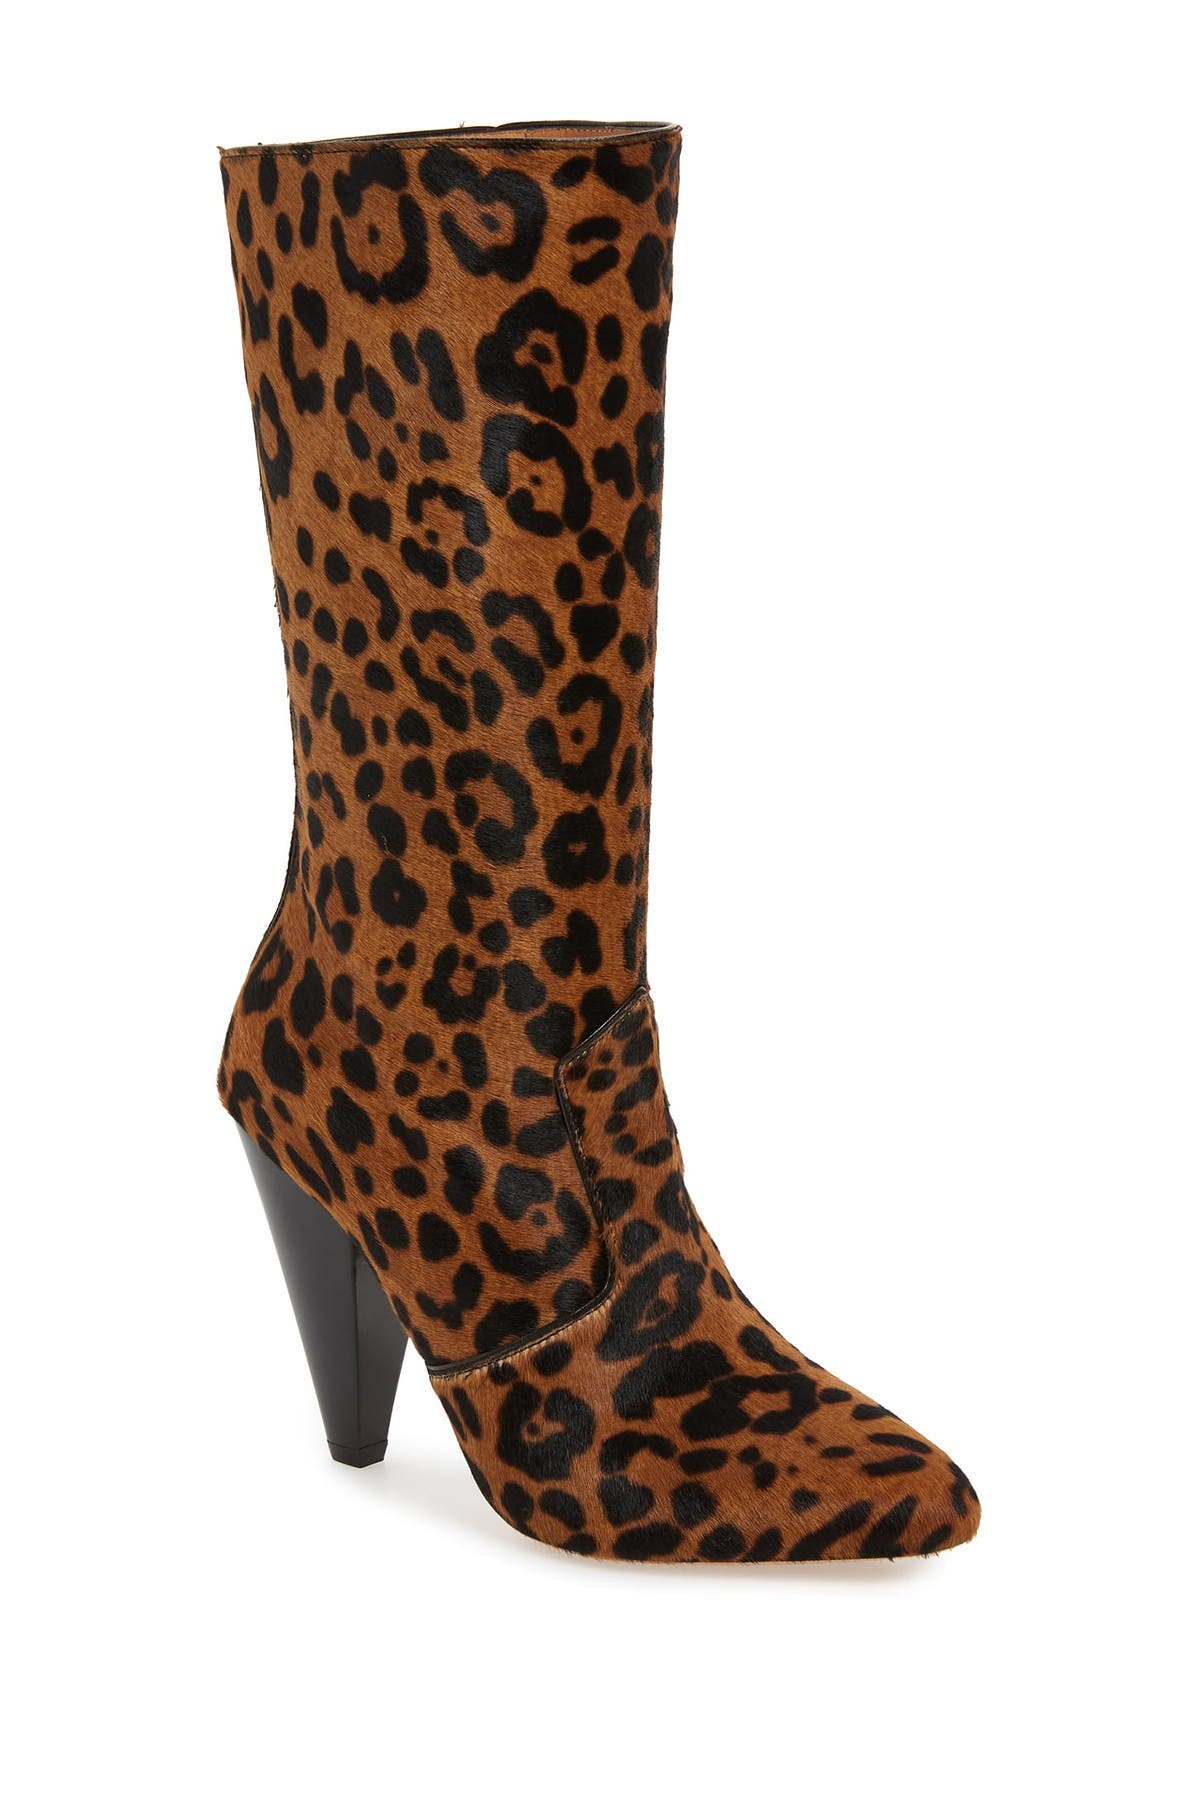 veronica beard leopard boots